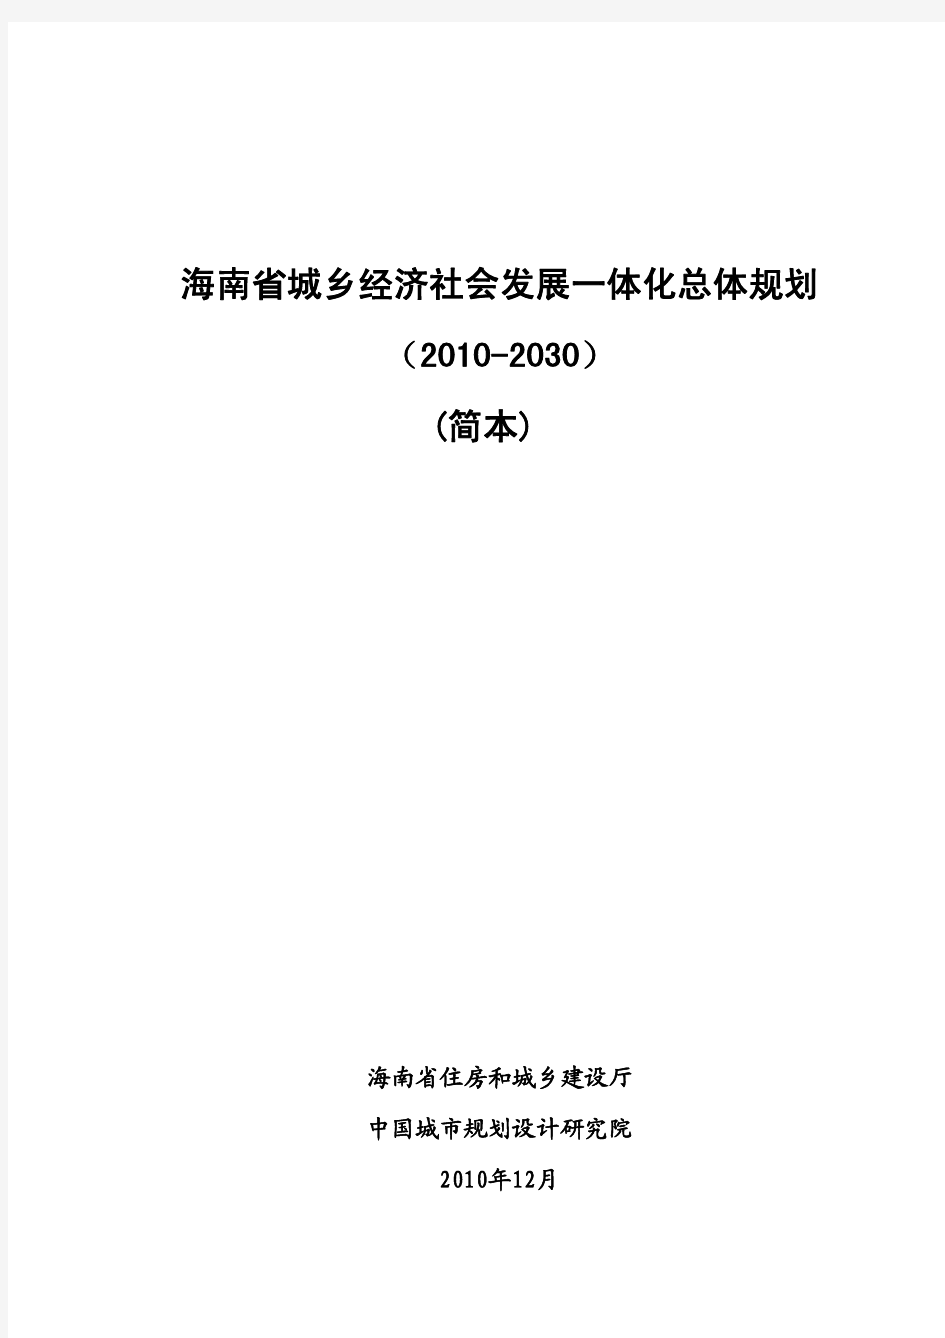 海南省城乡经济社会发展一体化总体规划(2010-2030年)